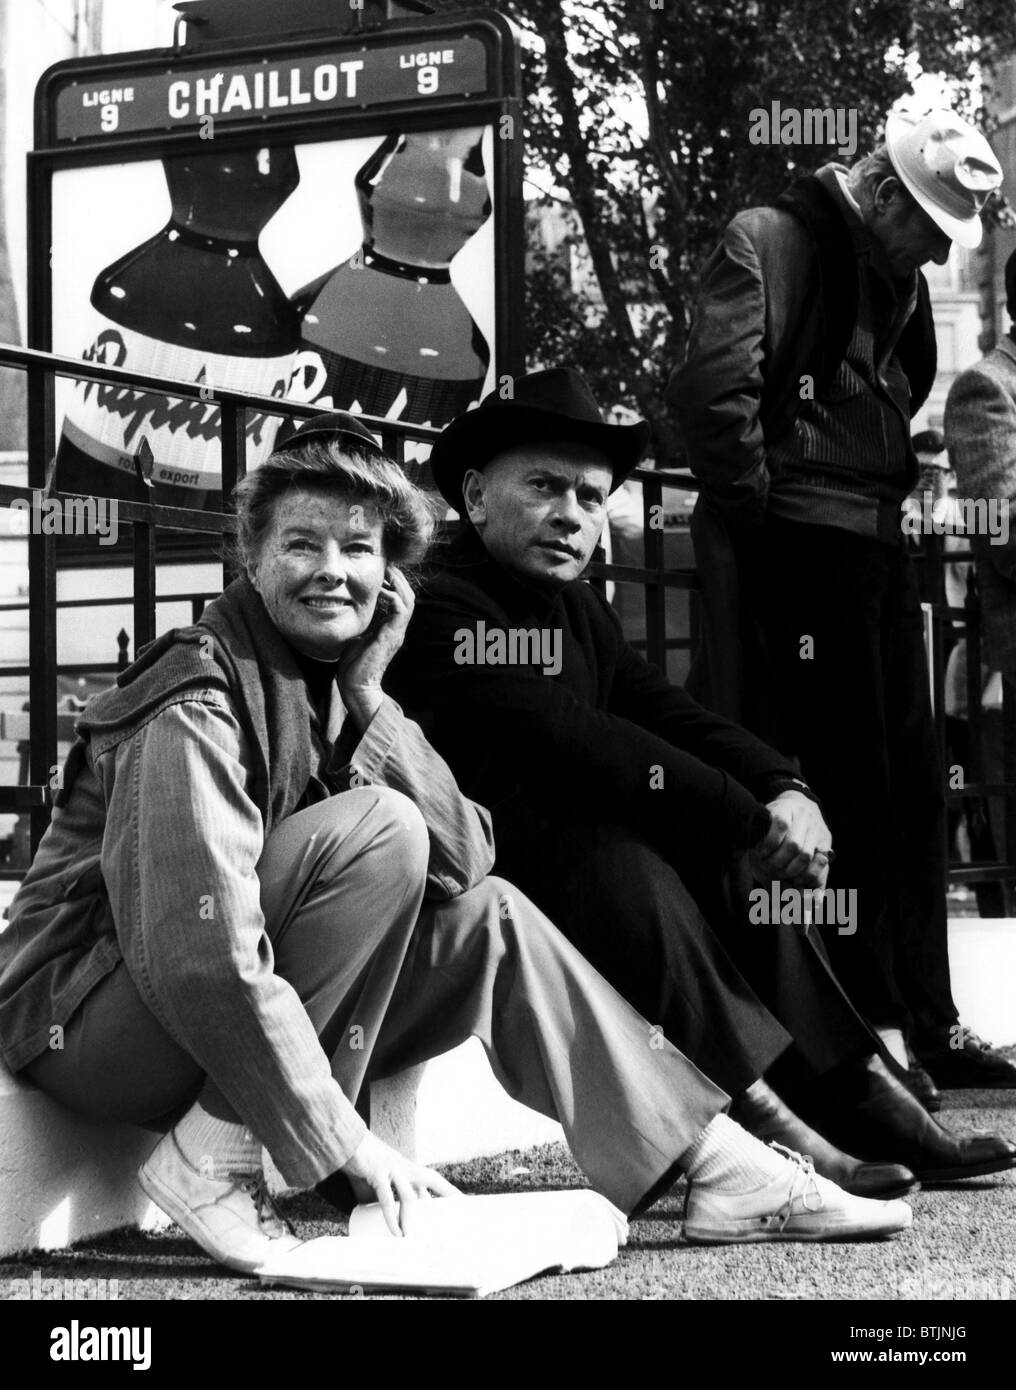 Katharine Hepburn, Yul Brynner und Danny Kaye auf die eingestellte of'THE MAD Frau von CHAILLOT ", Nizza, Frankreich. 1968. Höflichkeit CSU Archiv Stockfoto